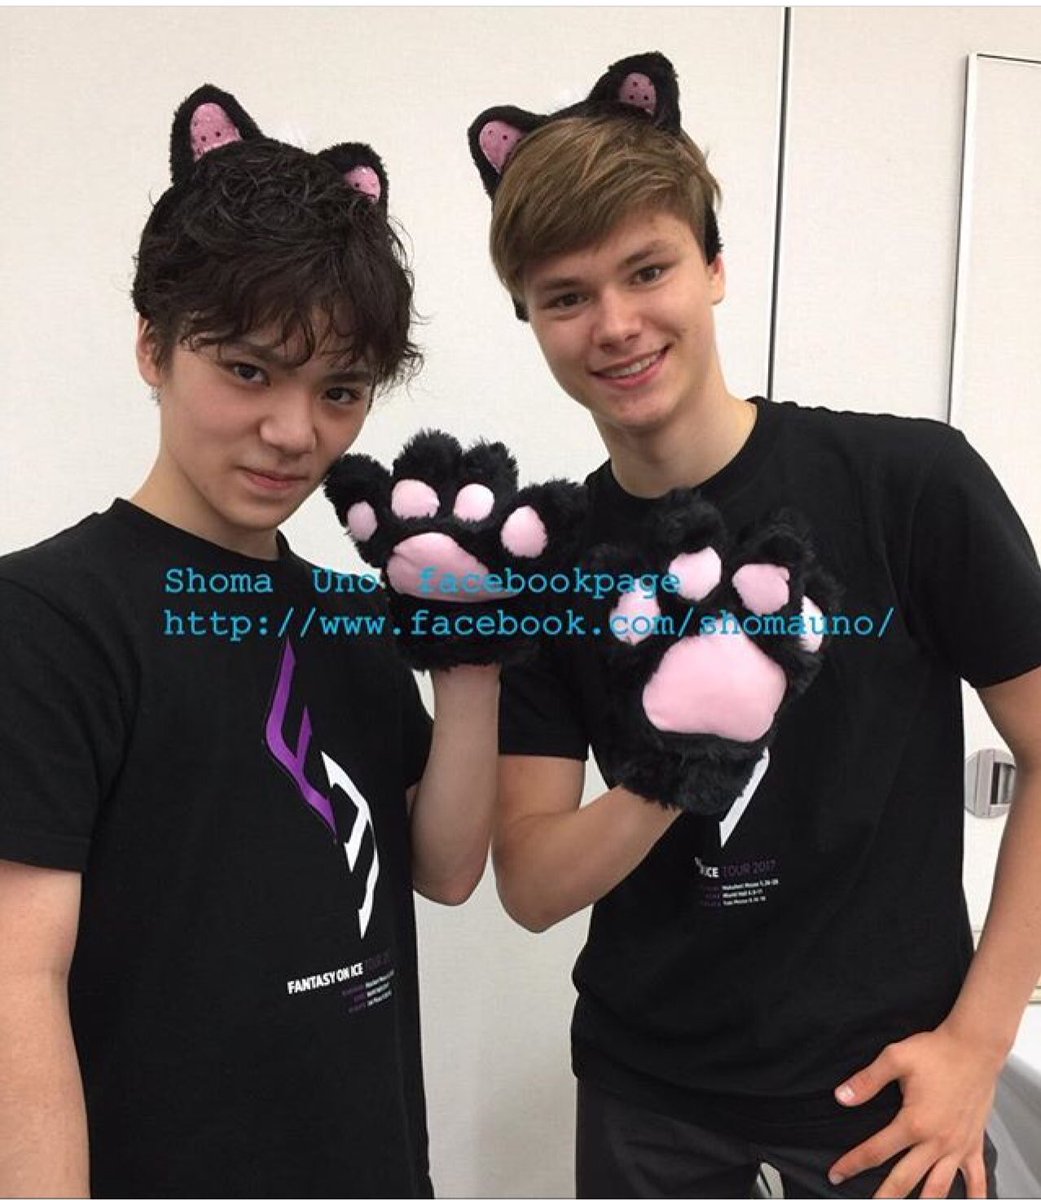 宇野昌磨選手とデニス君の猫耳ツーショット写真公開。めちゃくちゃ可愛い